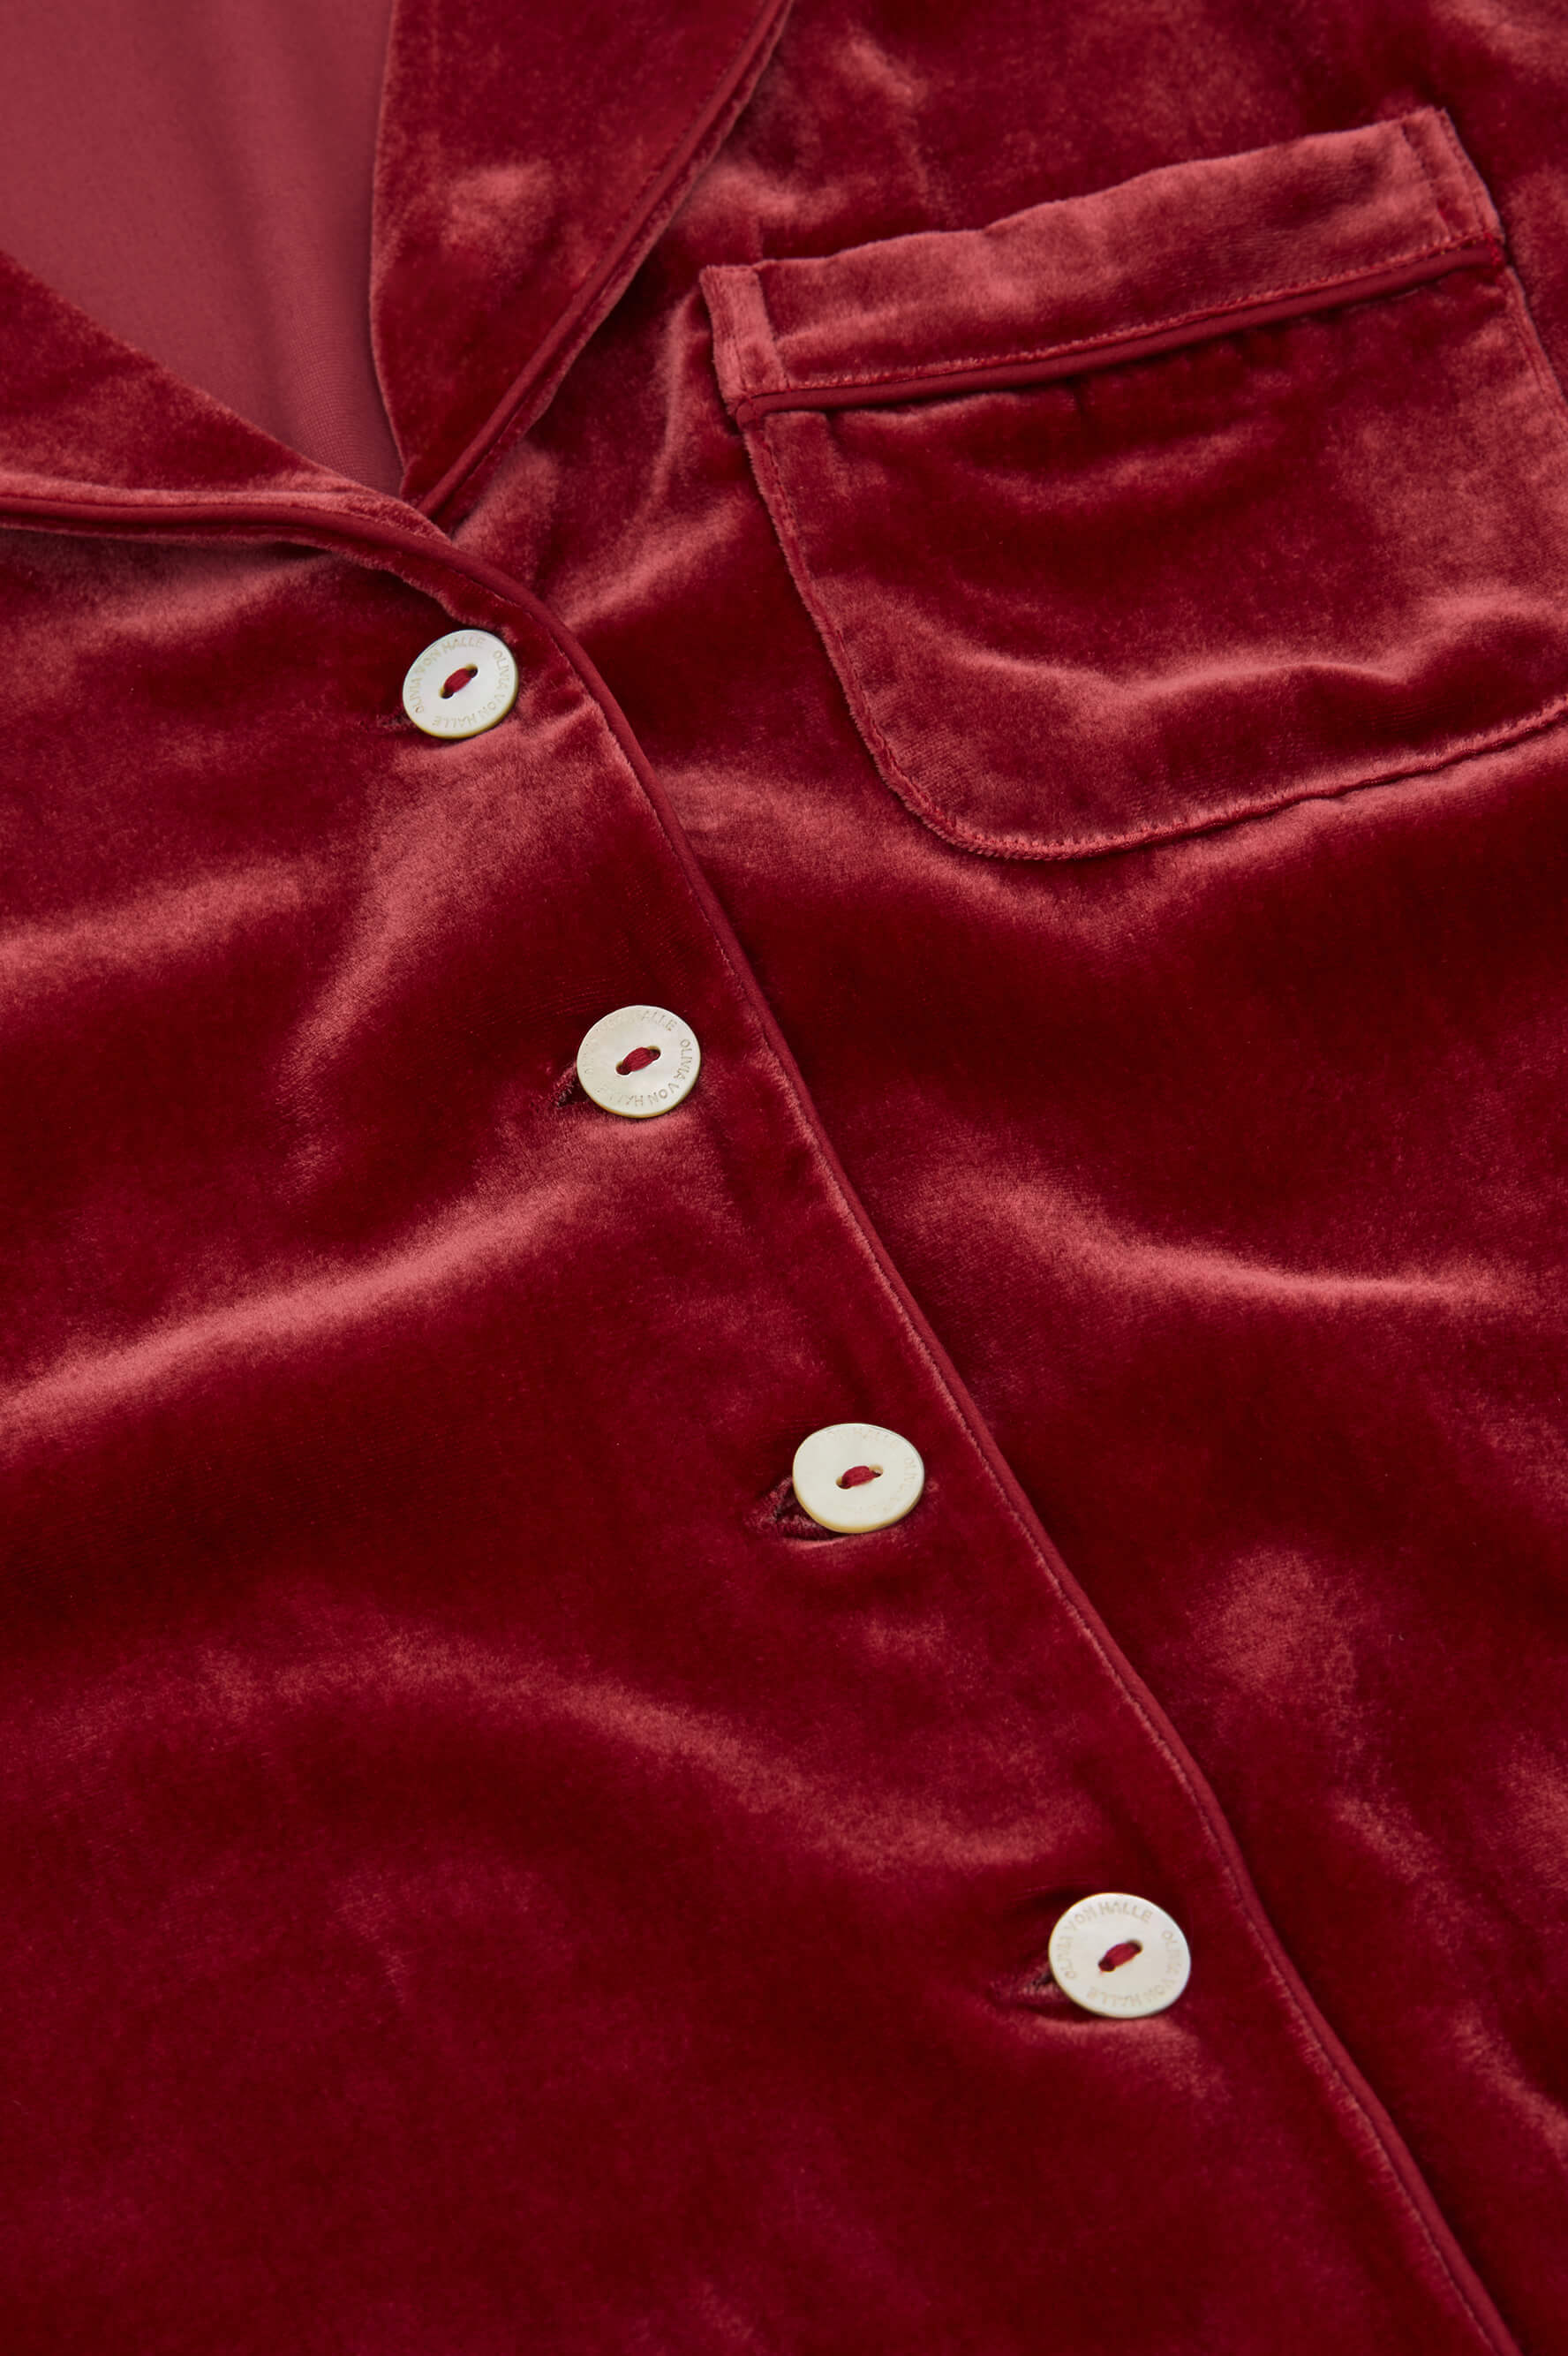 Coco Port Red Pyjamas in Silk Velvet